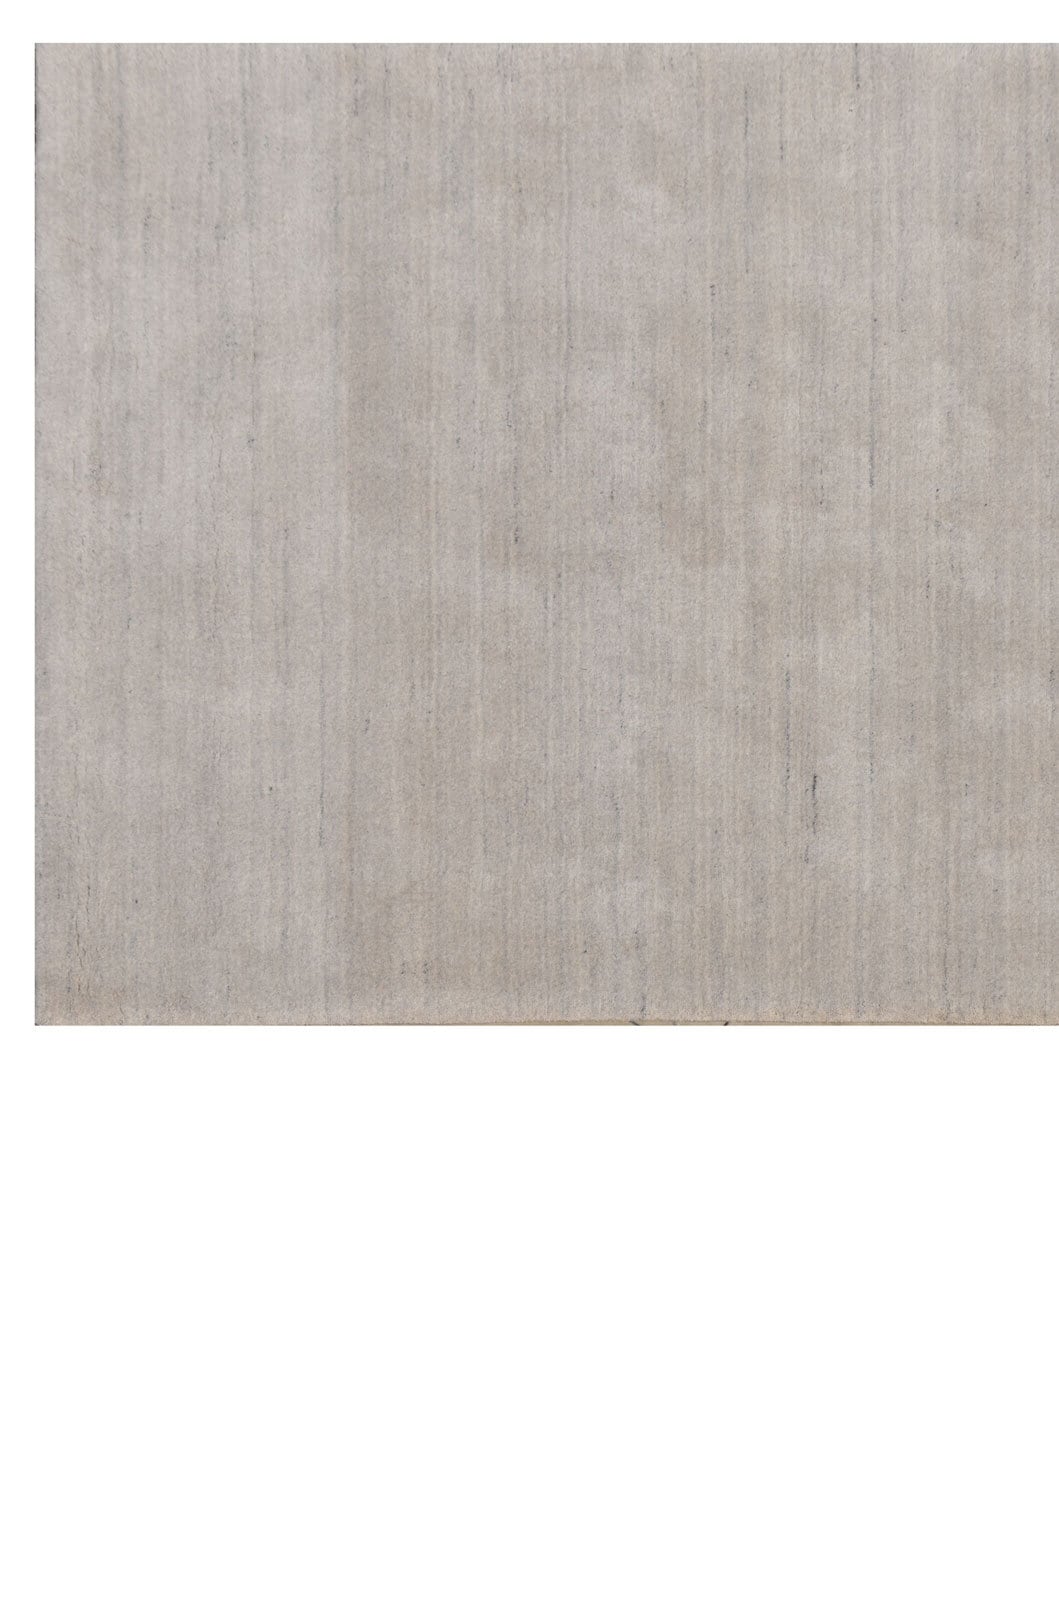 Berber-Teppich ATLAS 140 x 200 cm grau meliert 